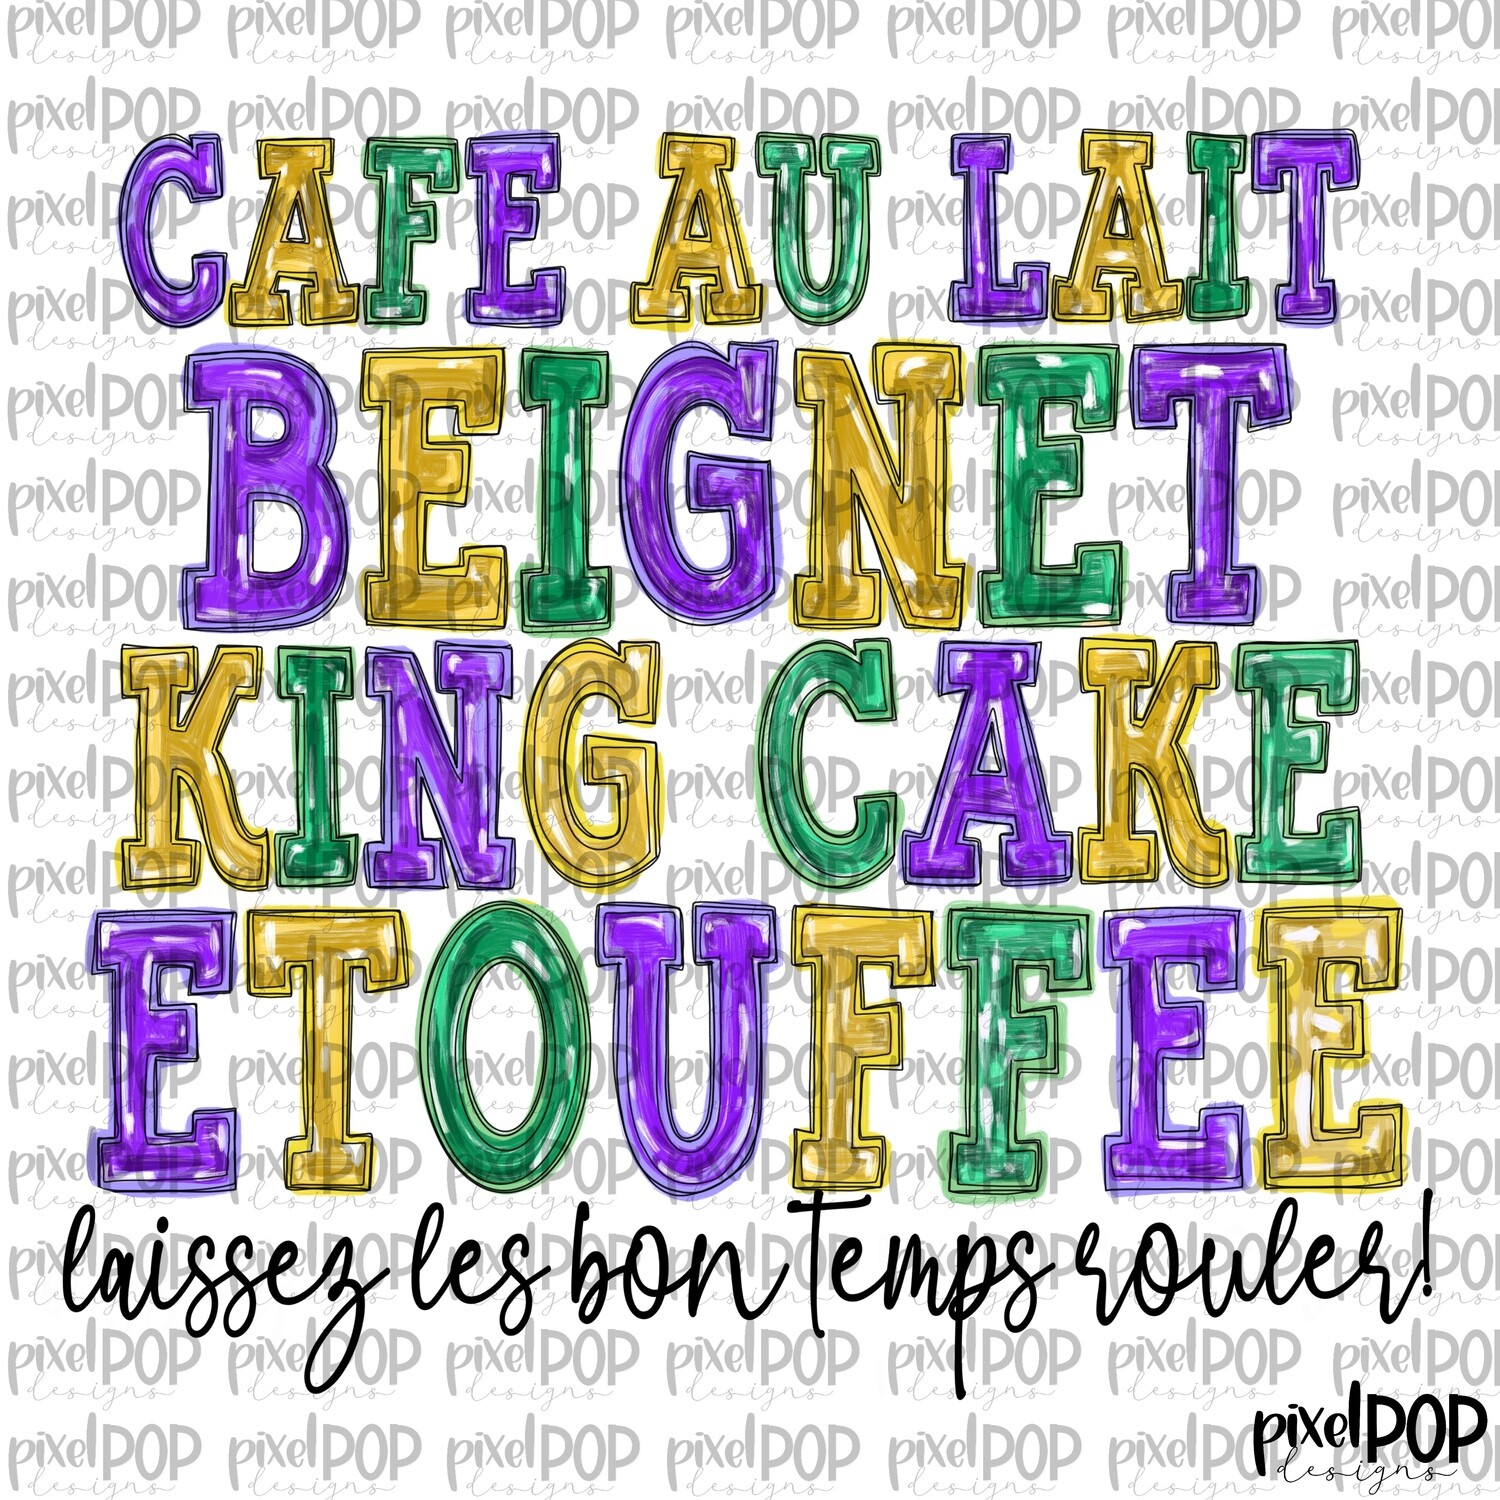 Favorite Things Louisiana Mardi Gras PNG | Cafe Au Lait Beignet King Cake Etoufee Laisses les Bon Temps Rouler